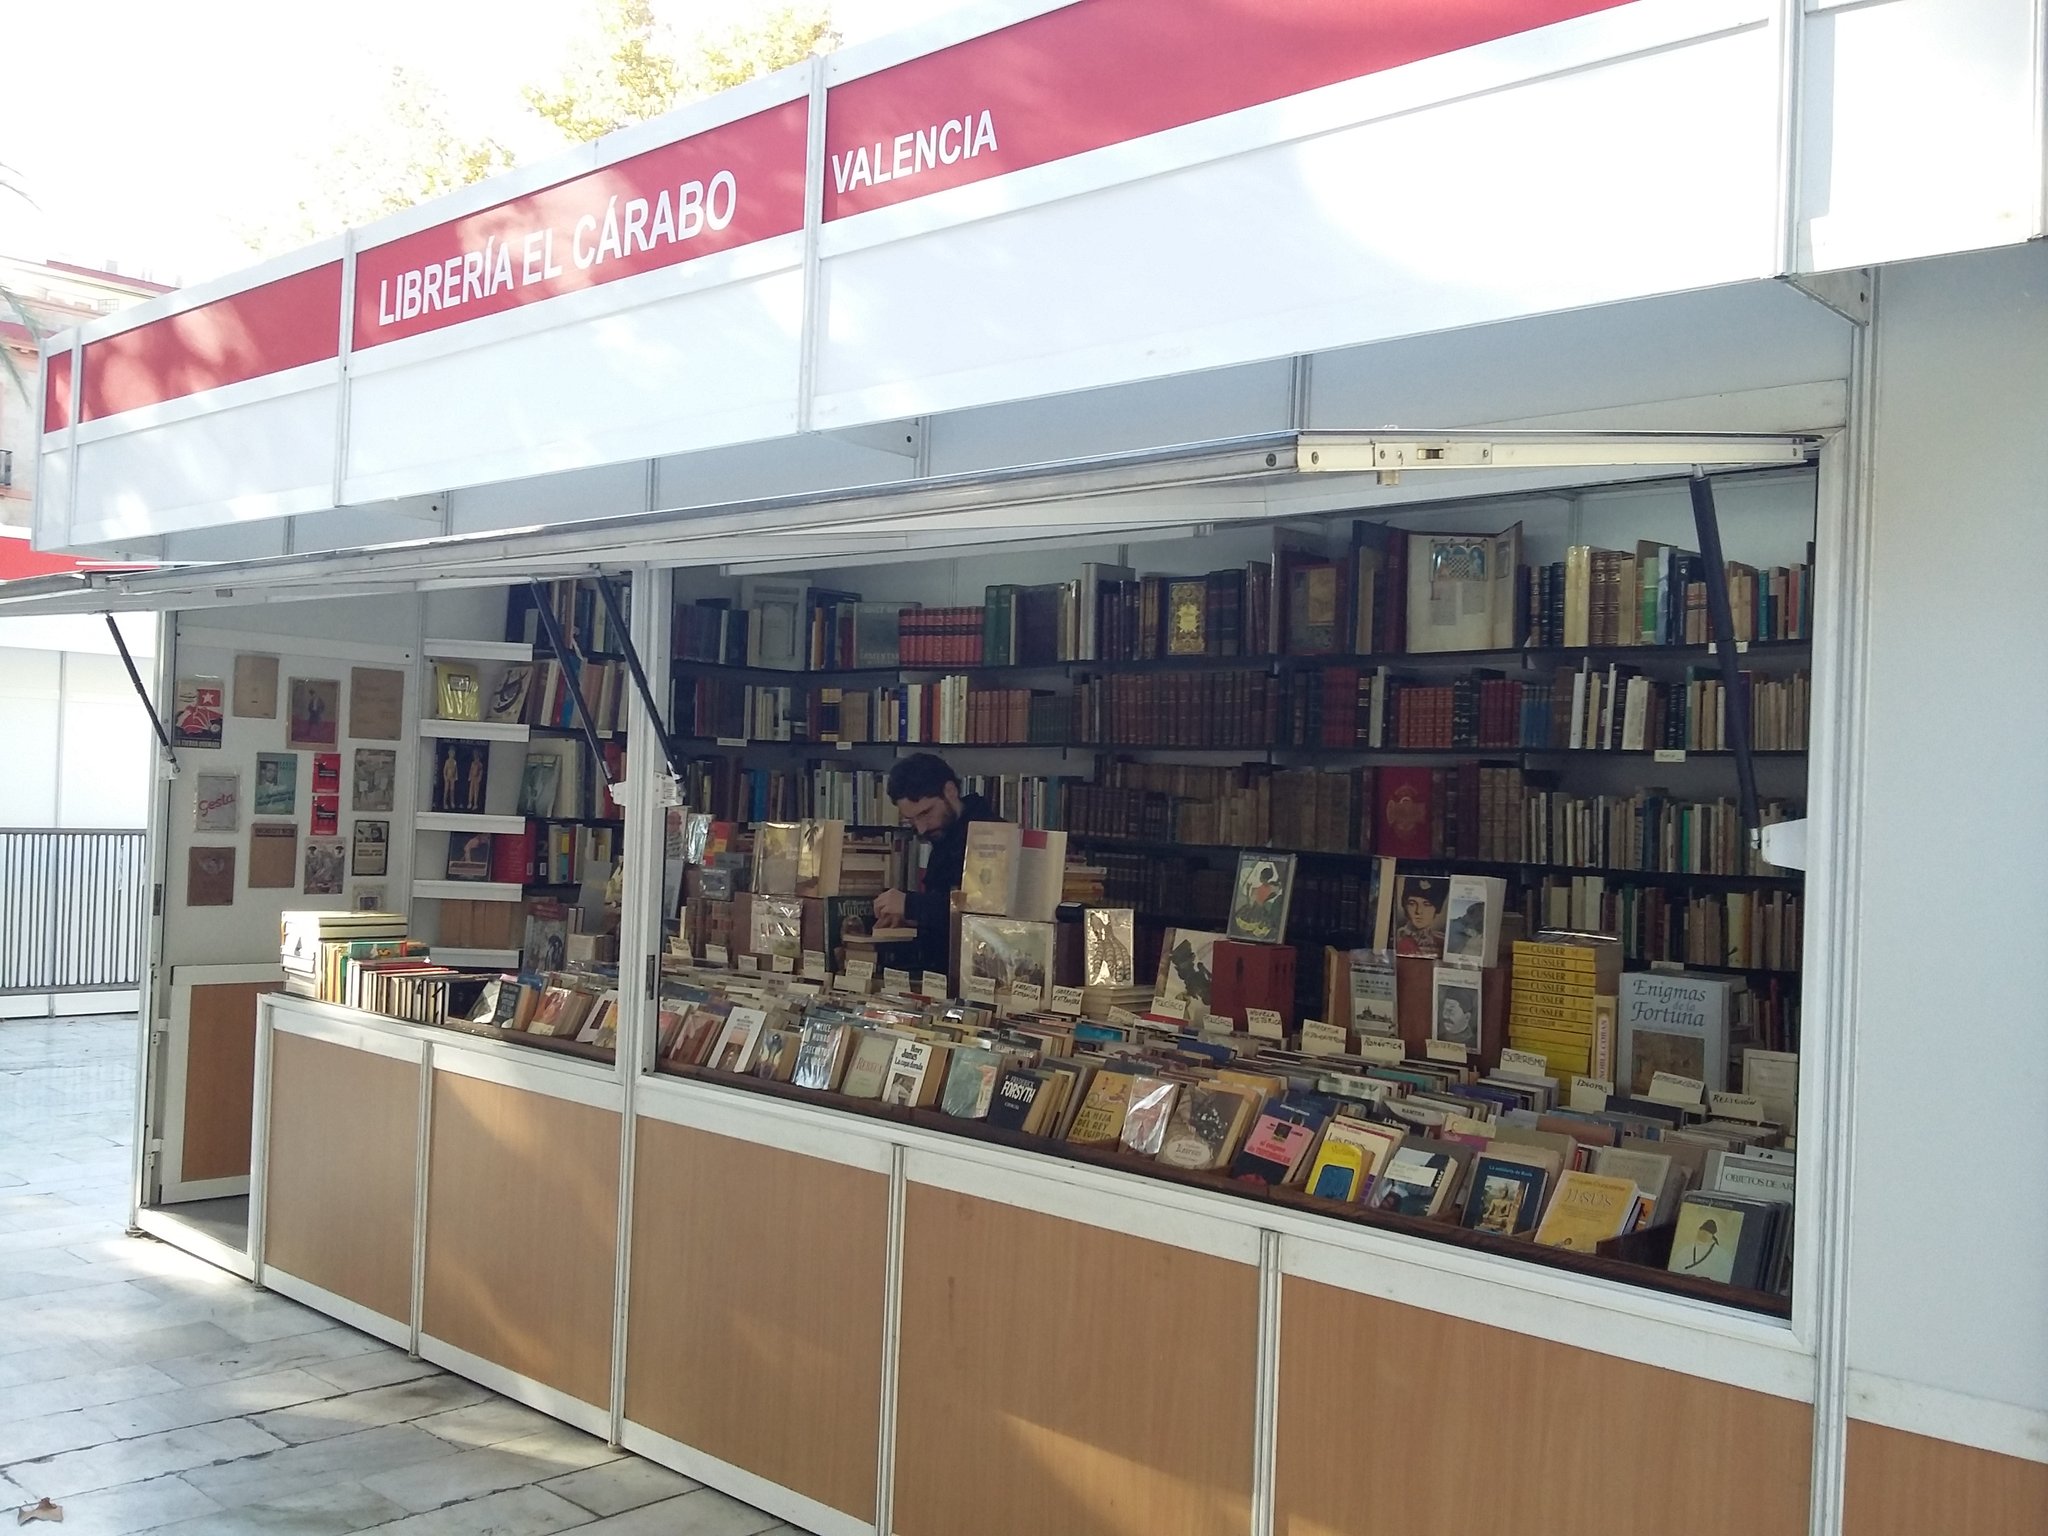 Librería El Cárabo